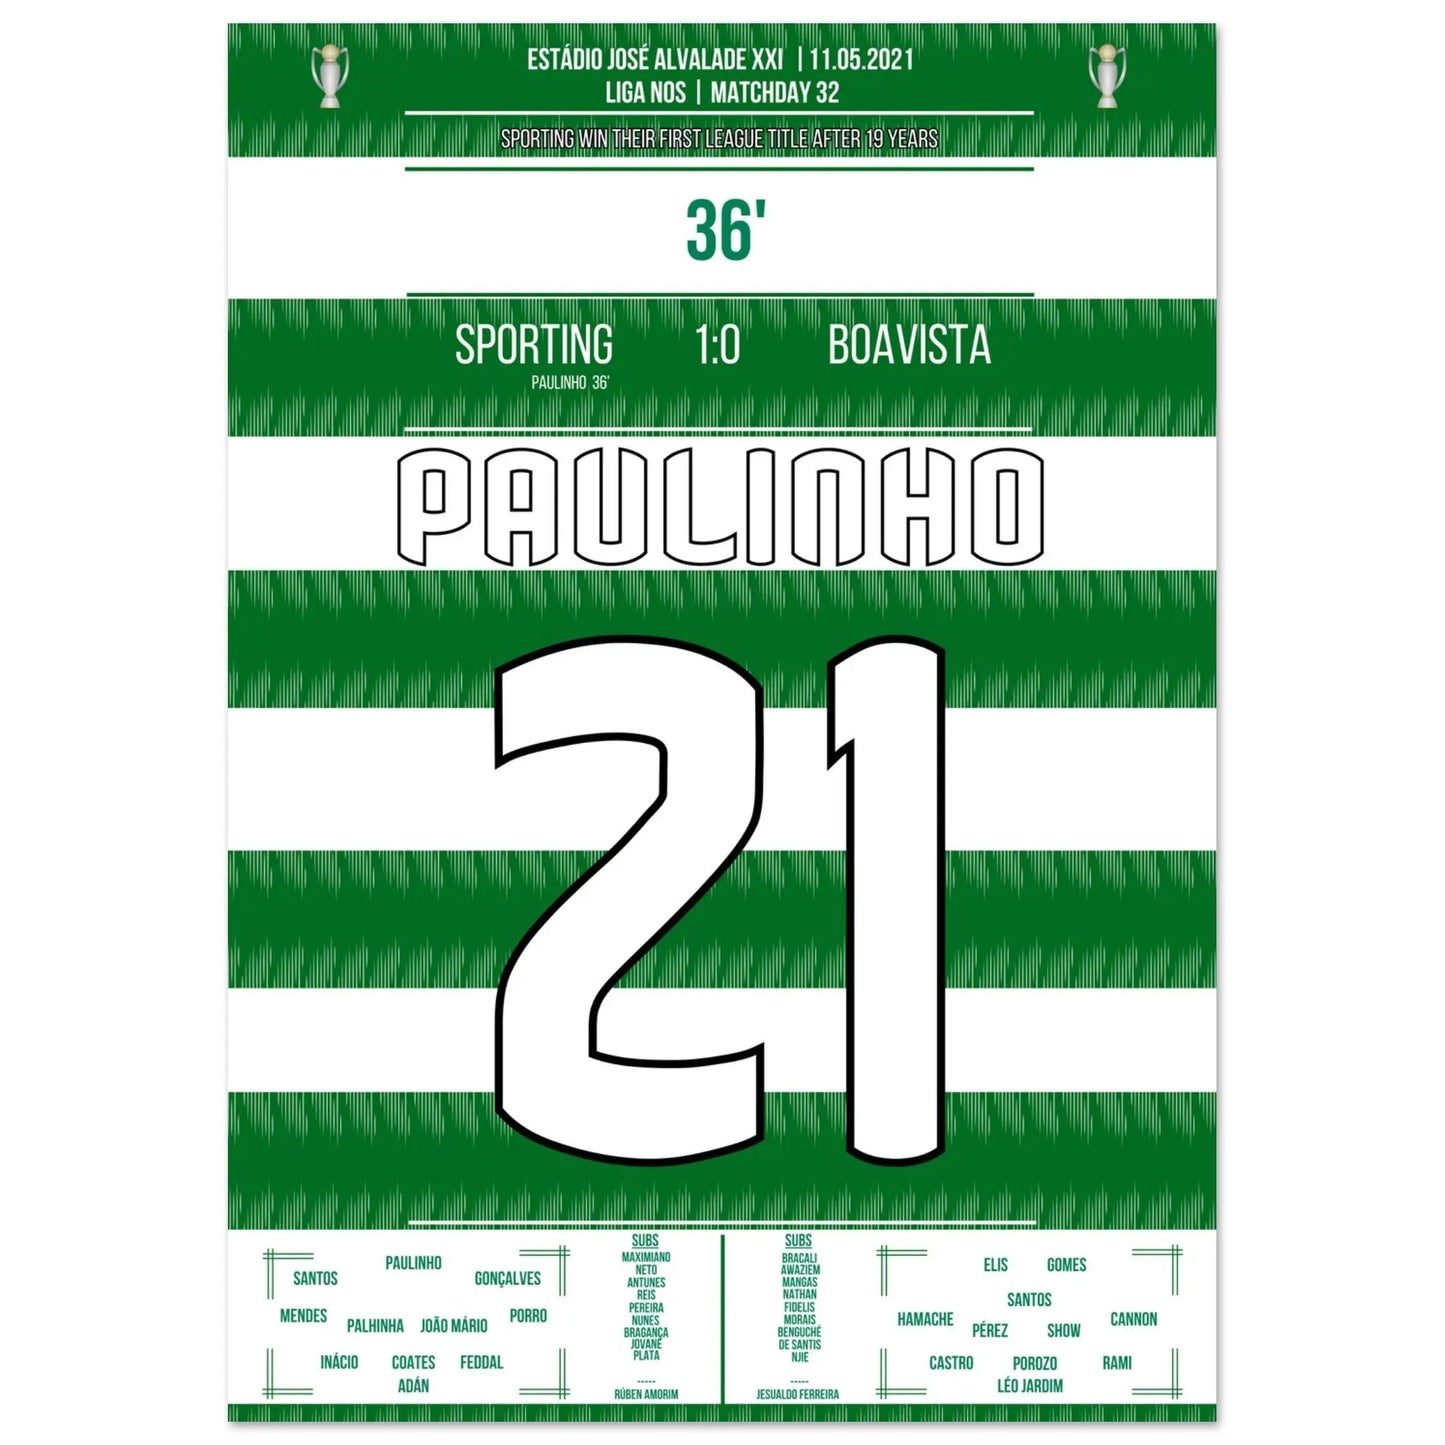 L'objectif de Paulinho de remporter le titre pour la première fois depuis 2002